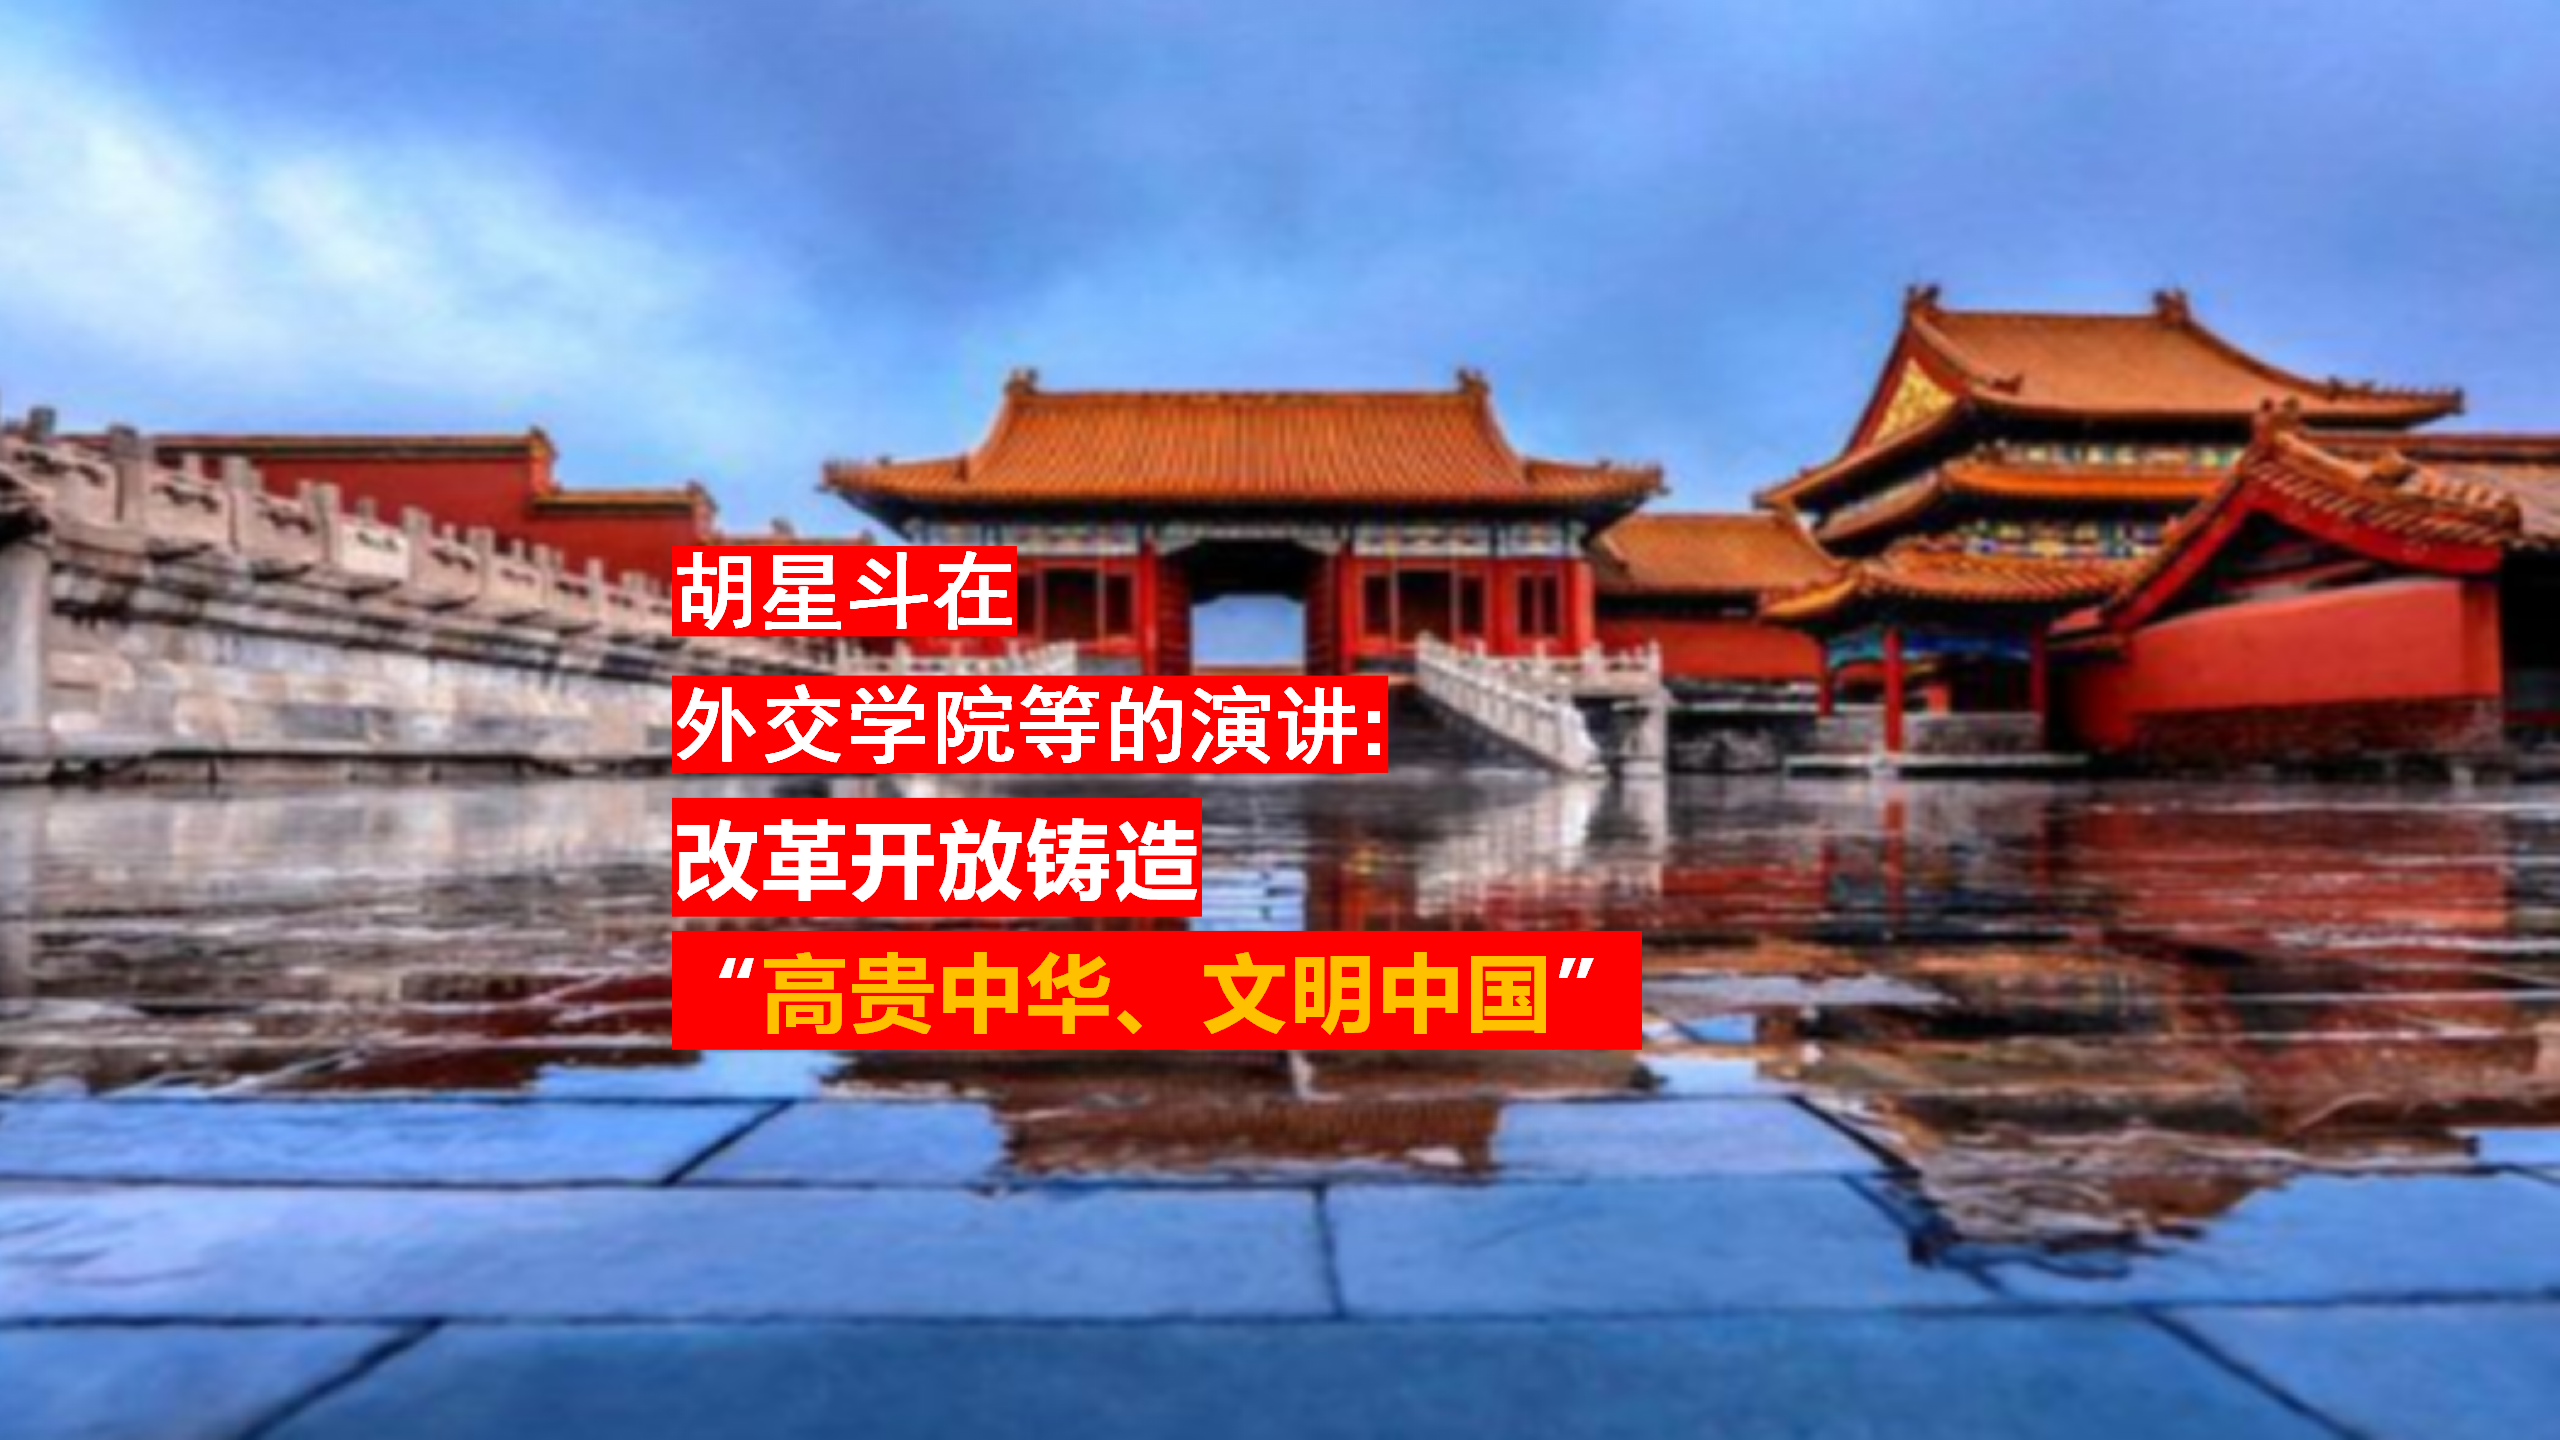 胡星斗在外交学院等的演讲:改革开放铸造高贵中华,文明中国